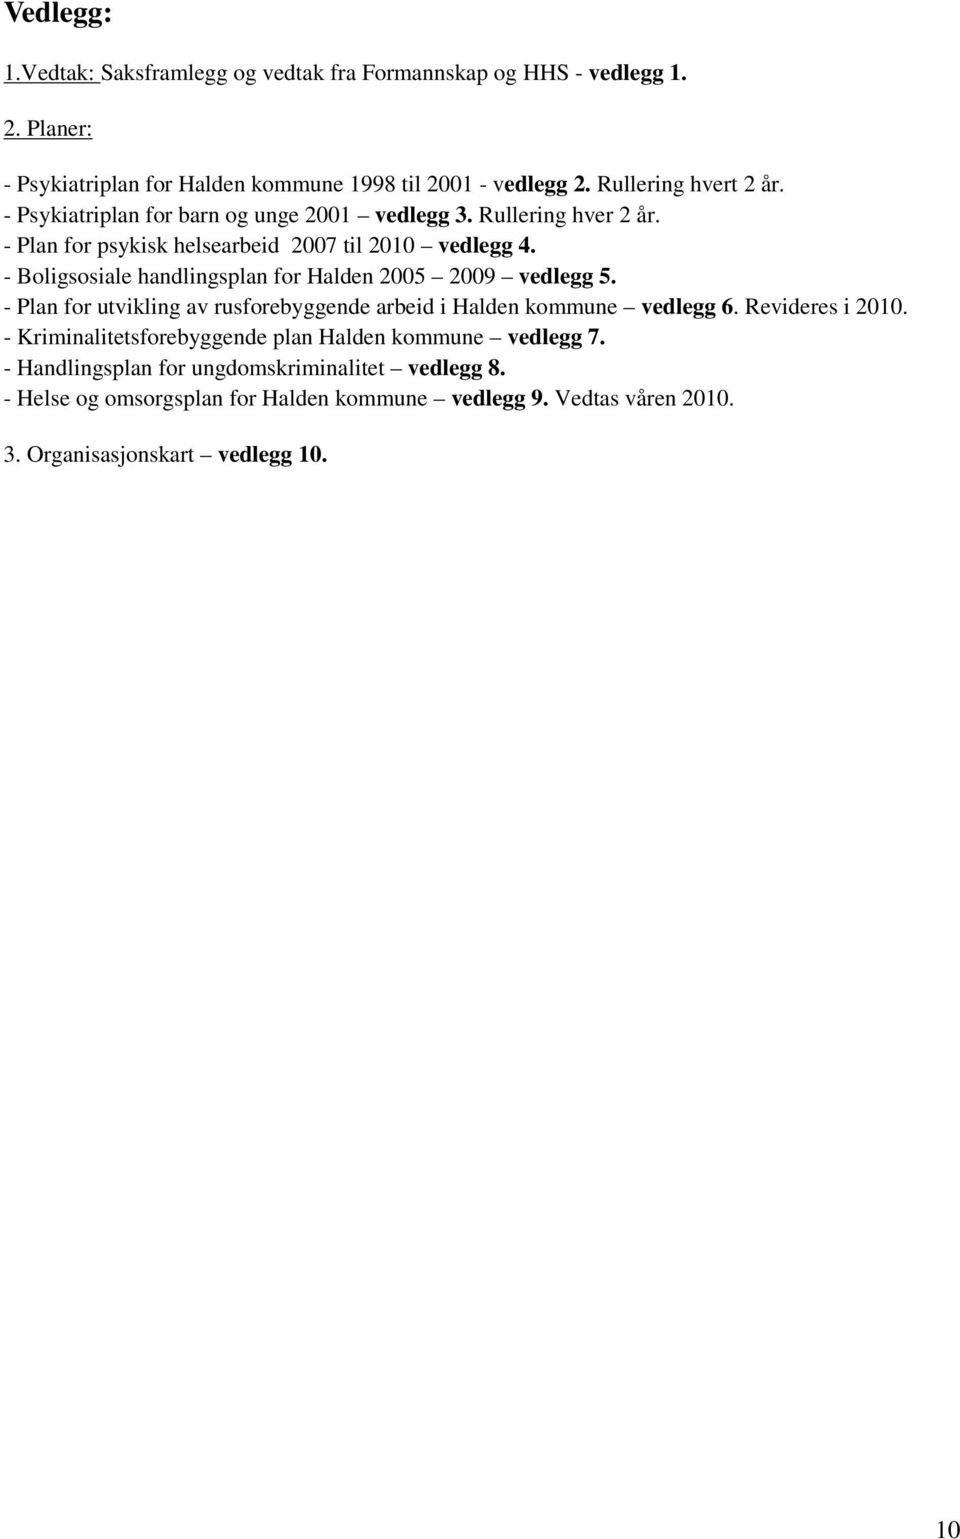 - Boligsosiale handlingsplan for Halden 2005 2009 vedlegg 5. - Plan for utvikling av rusforebyggende arbeid i Halden kommune vedlegg 6. Revideres i 2010.